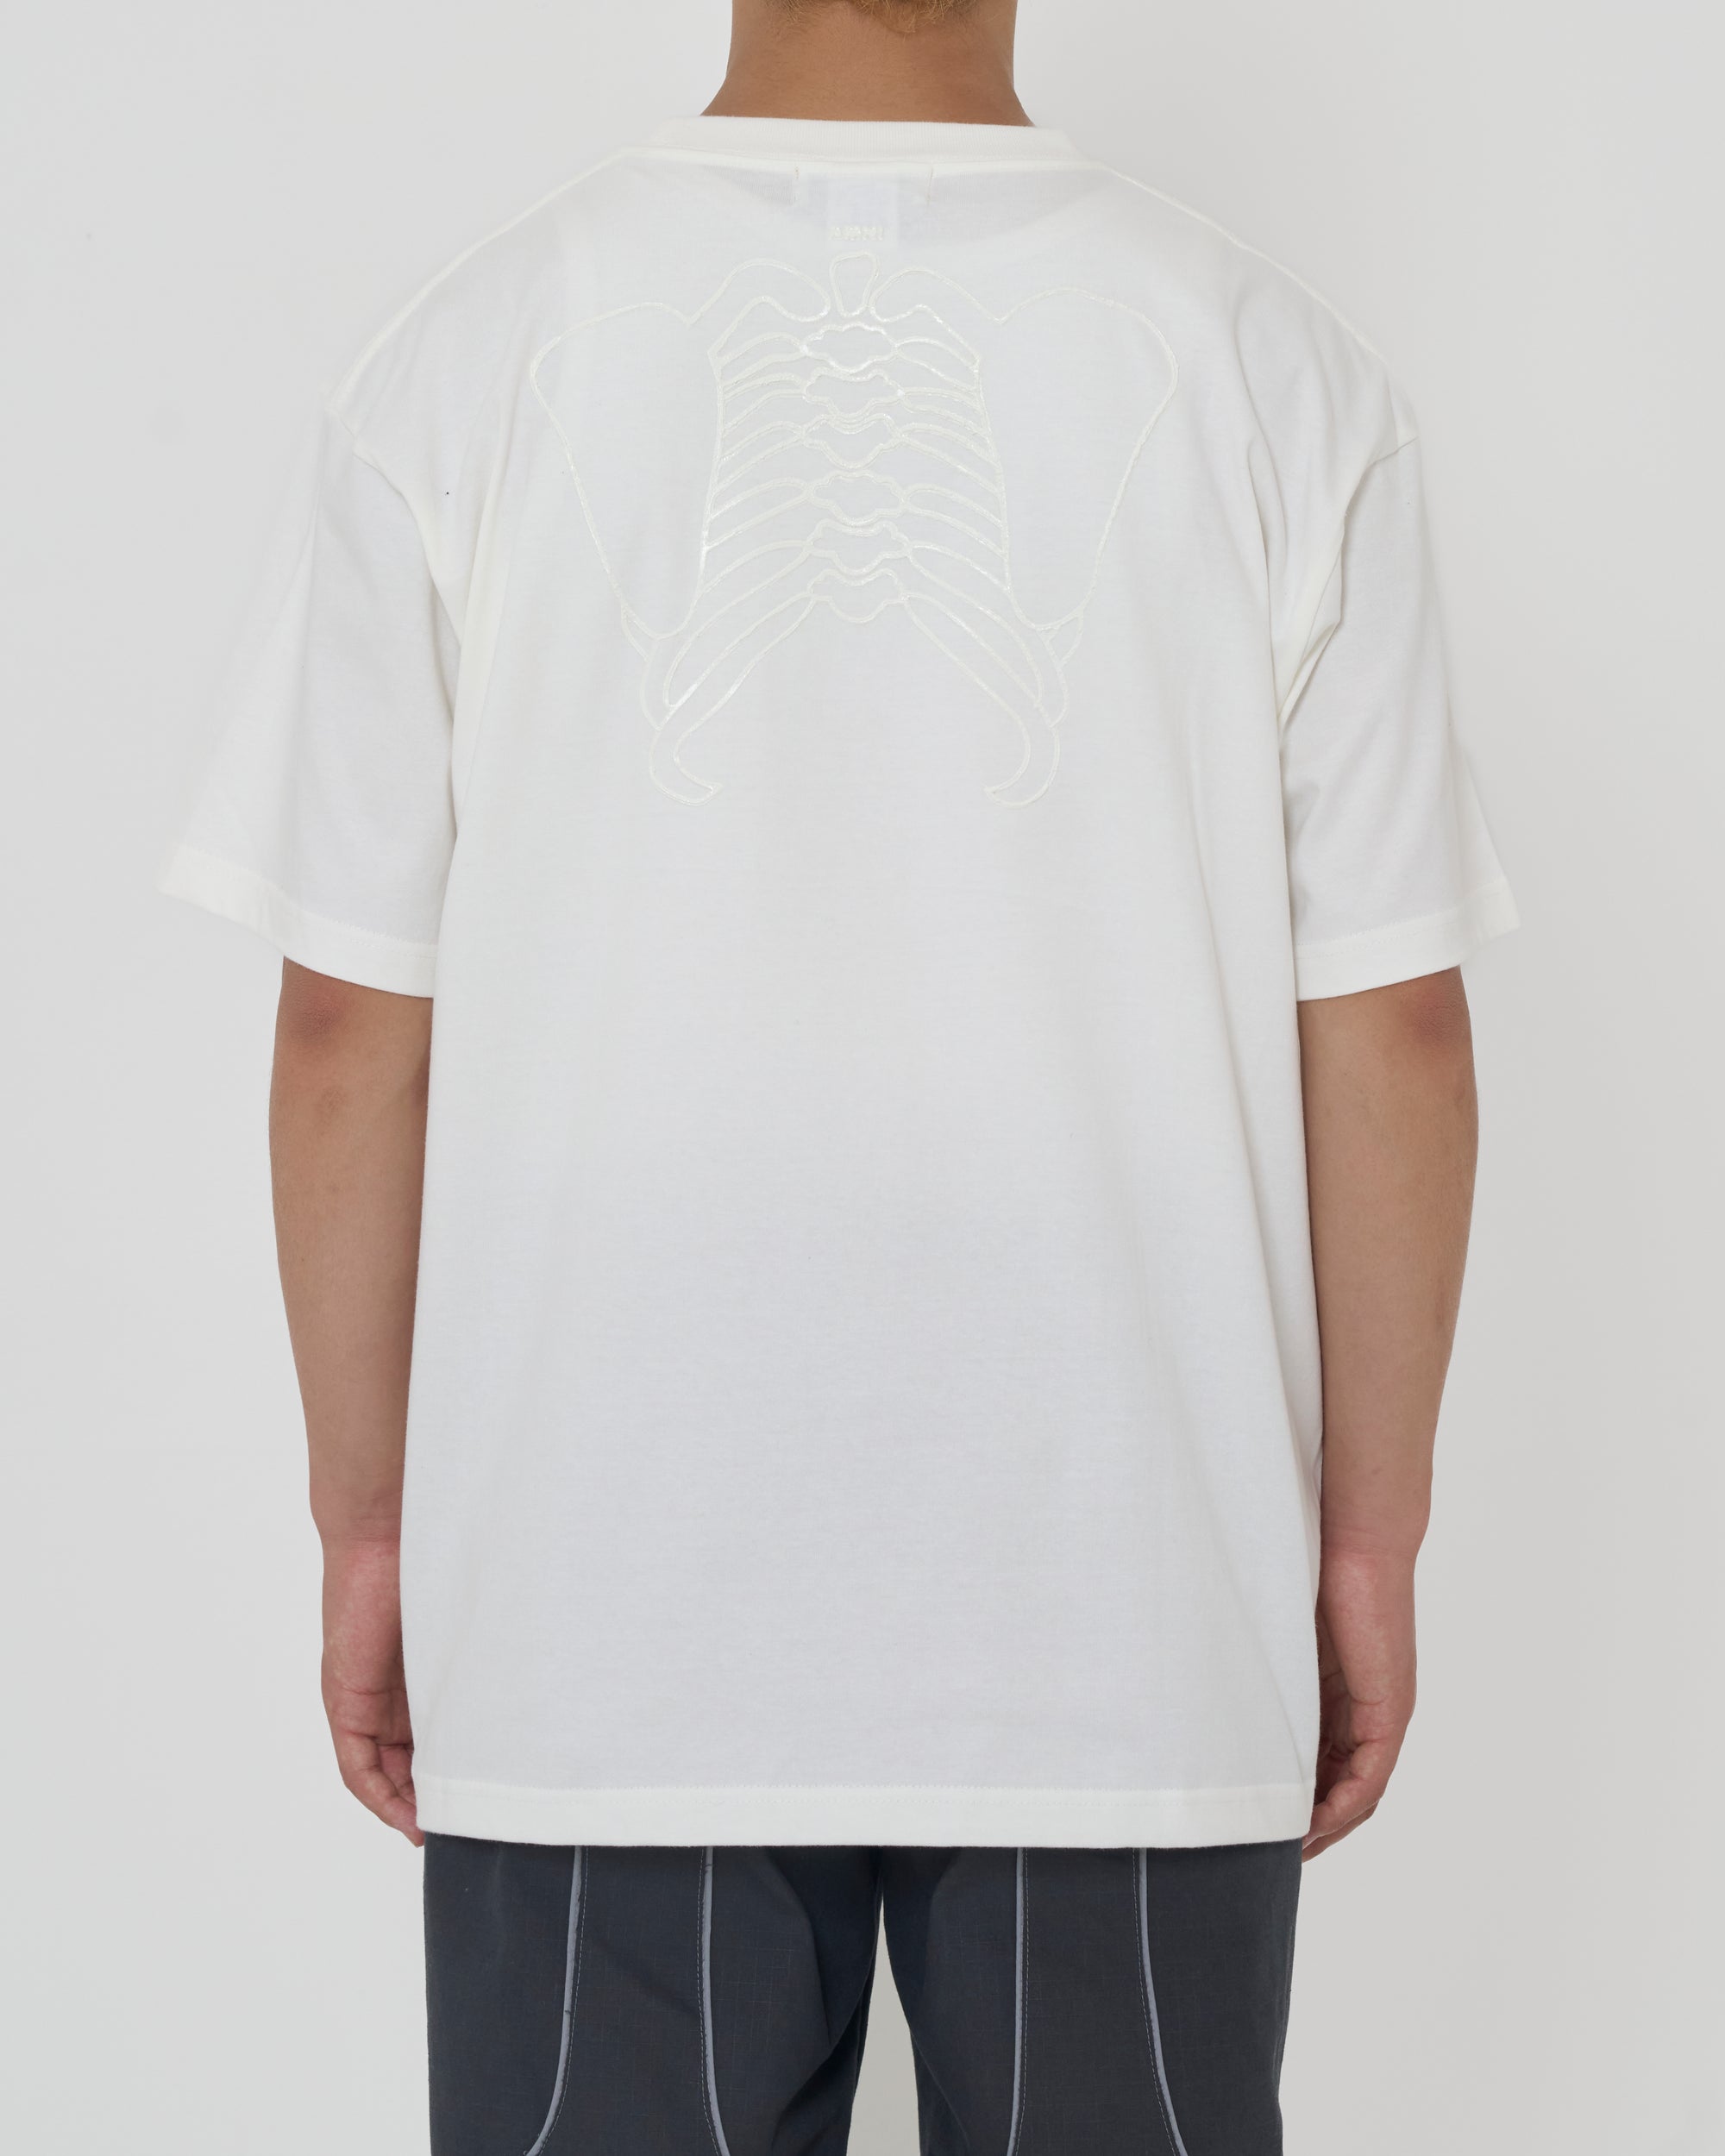 T-shirt / White × Luminous